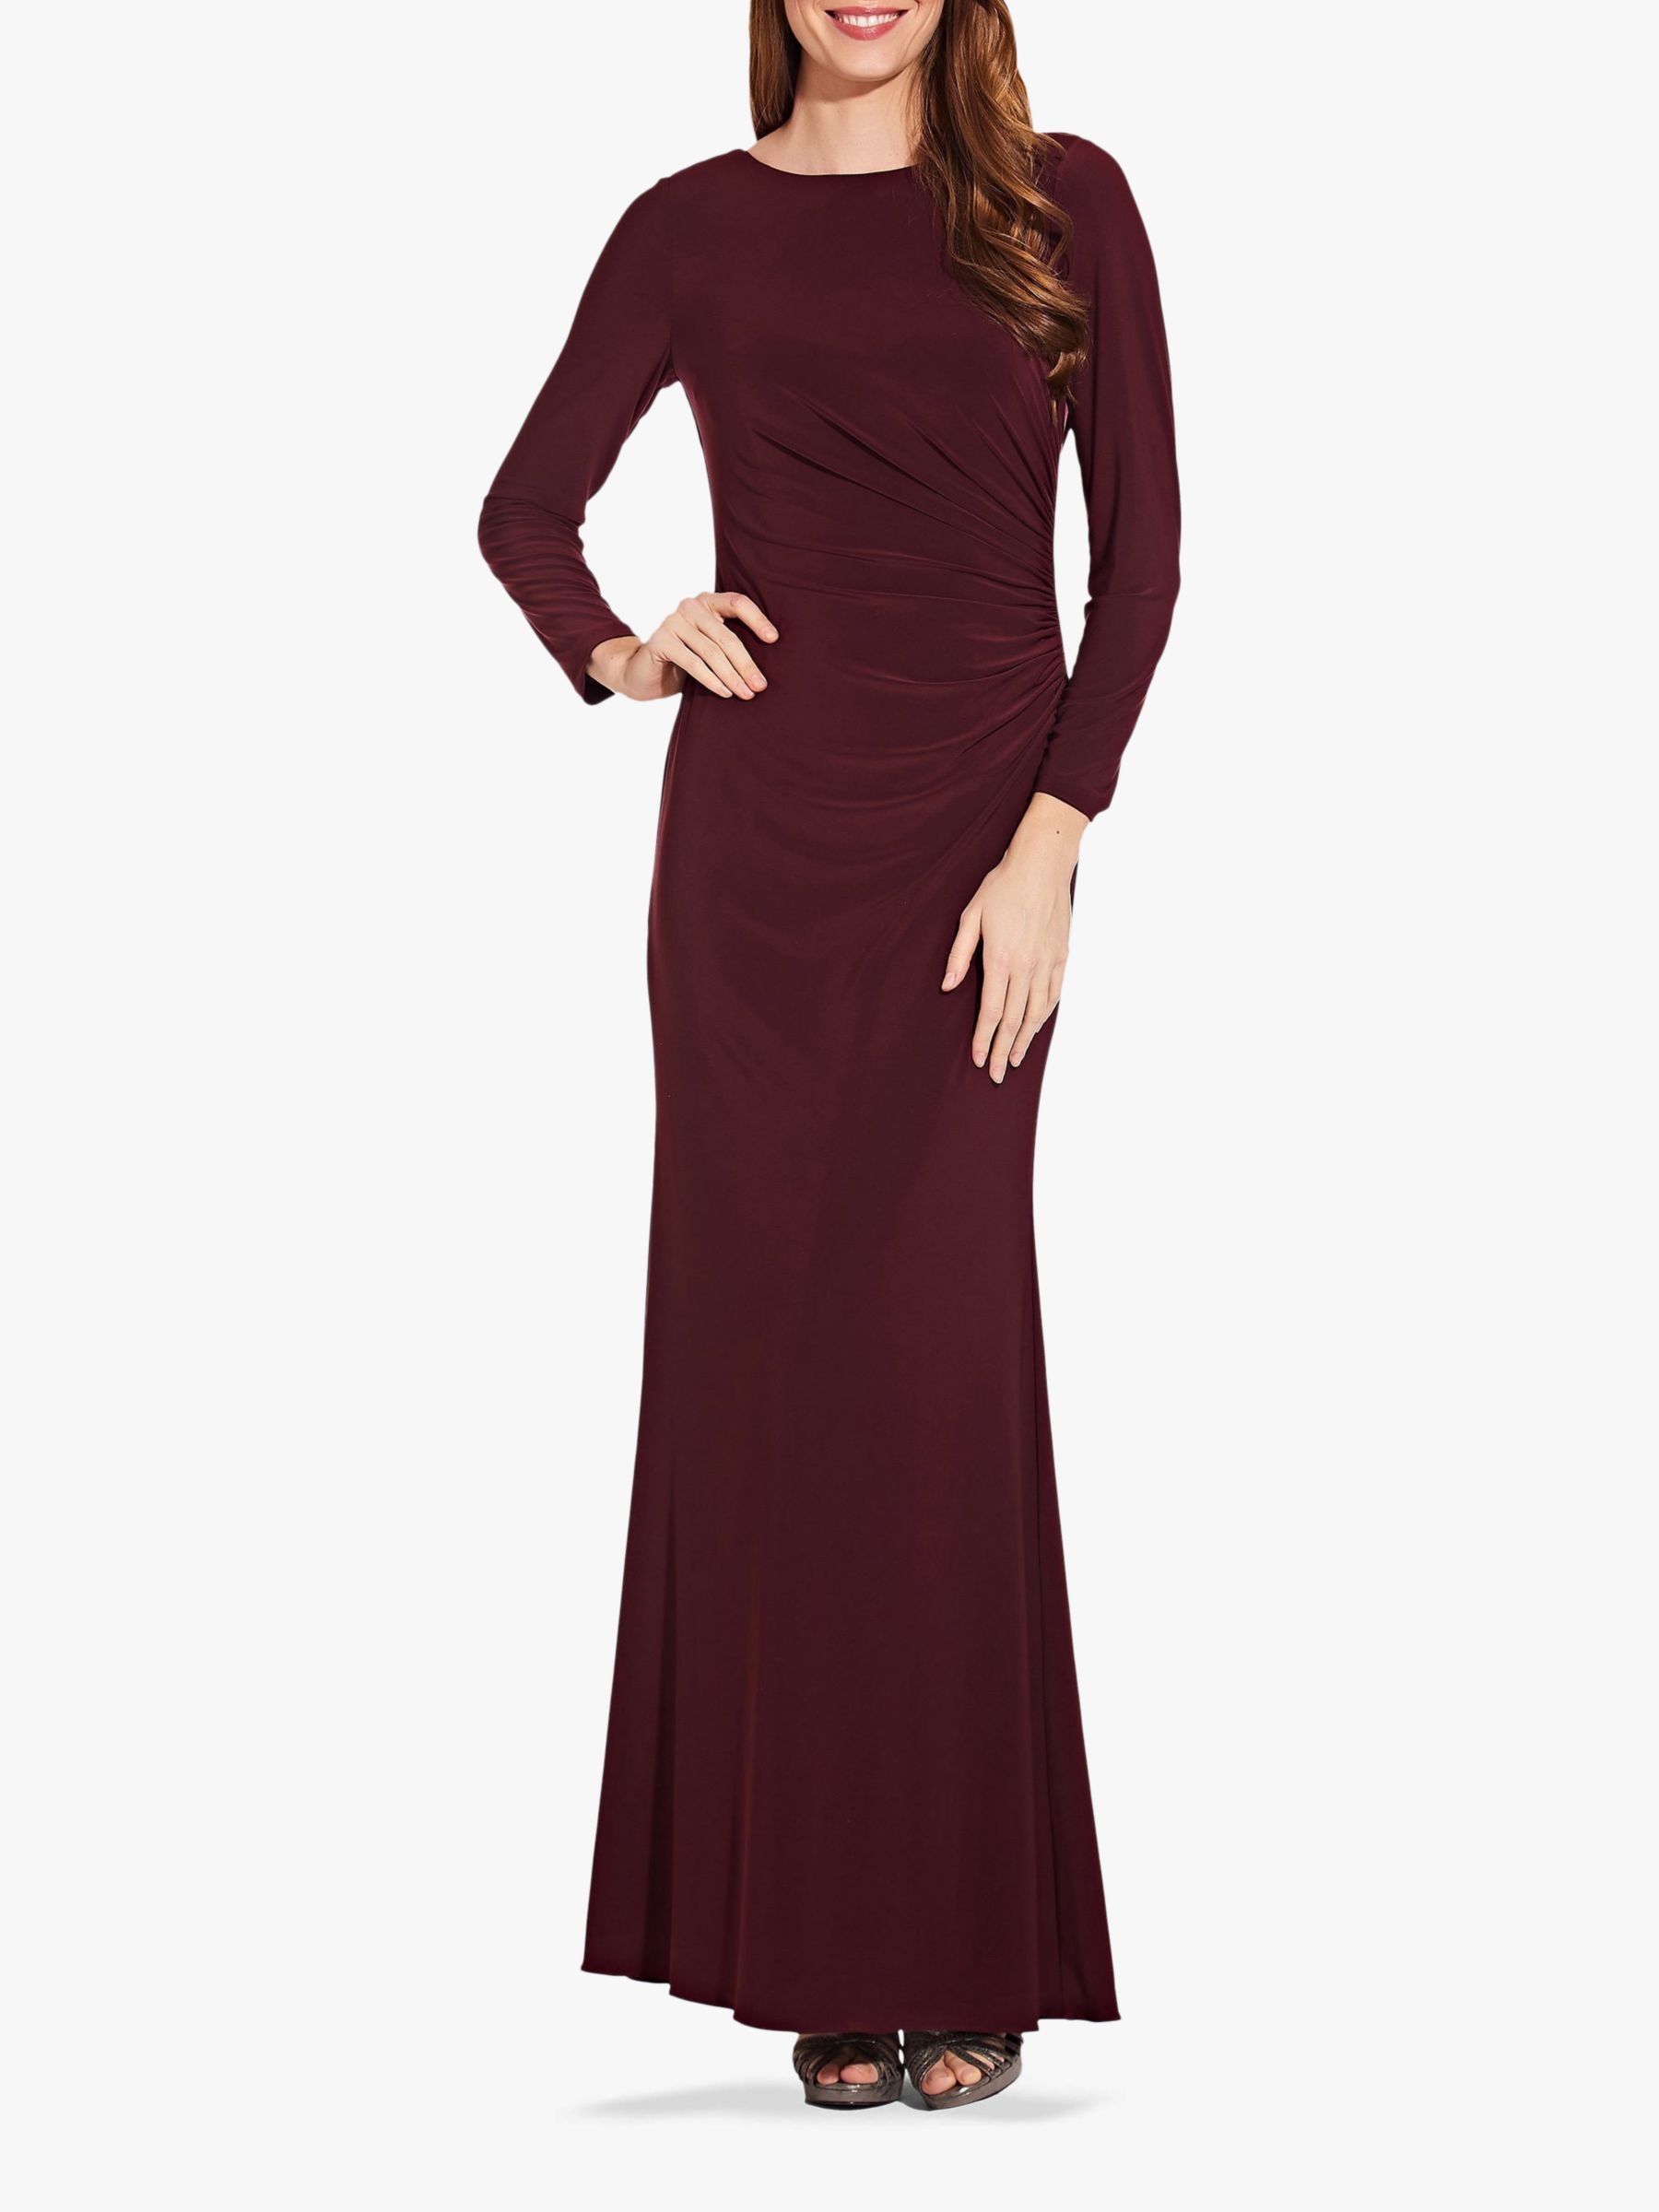 dark burgundy long dress